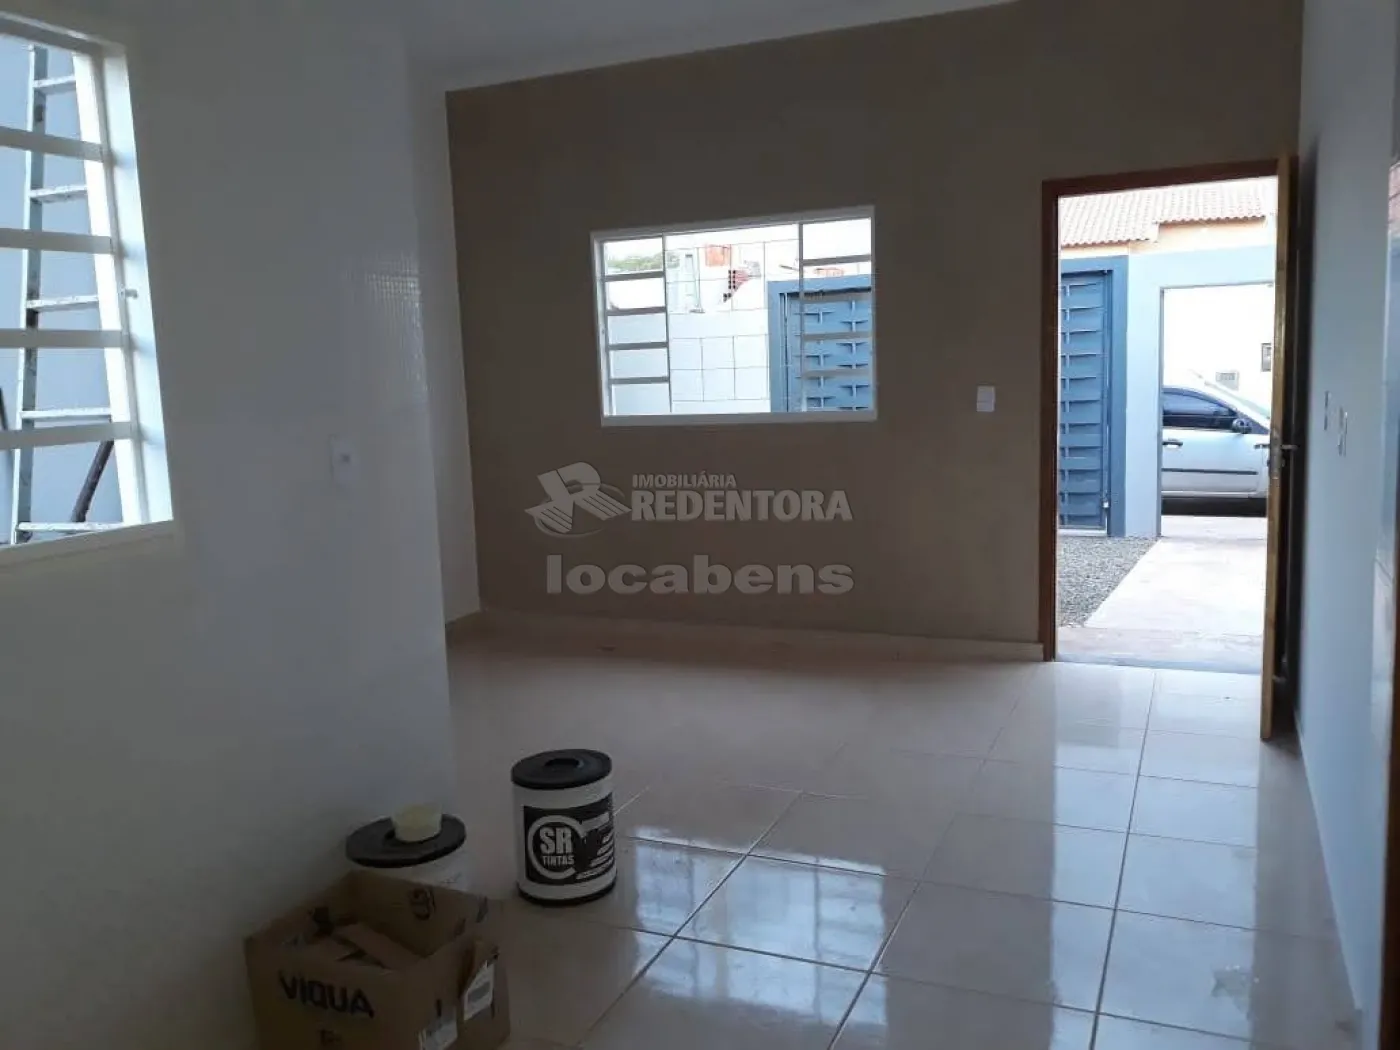 Comprar Casa / Padrão em São José do Rio Preto R$ 265.000,00 - Foto 6